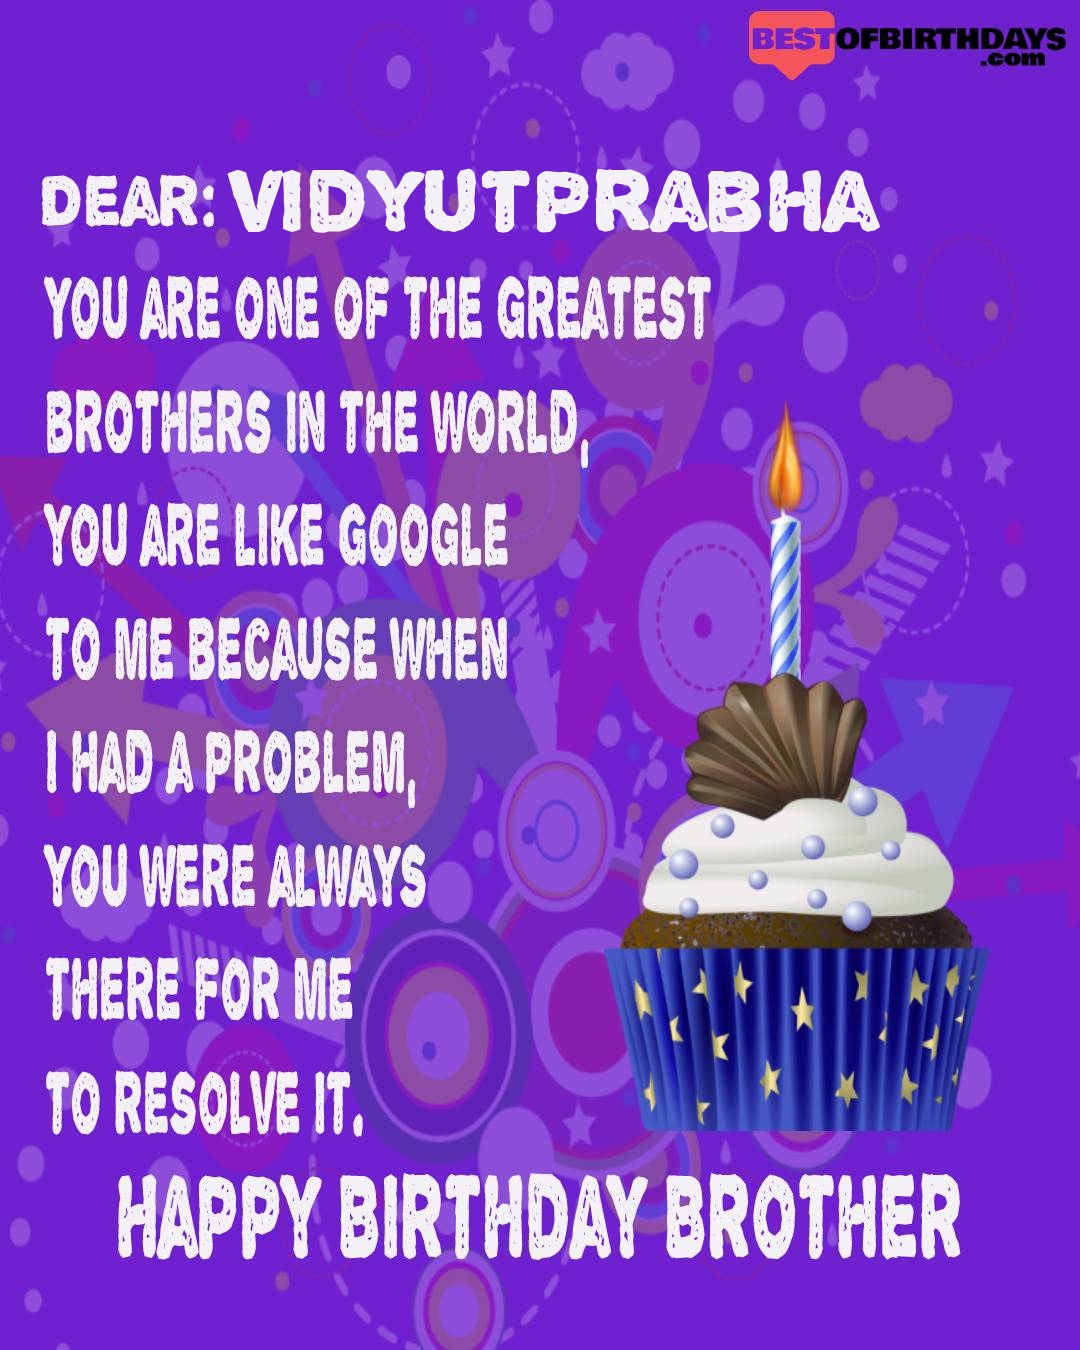 Happy birthday vidyutprabha bhai brother bro